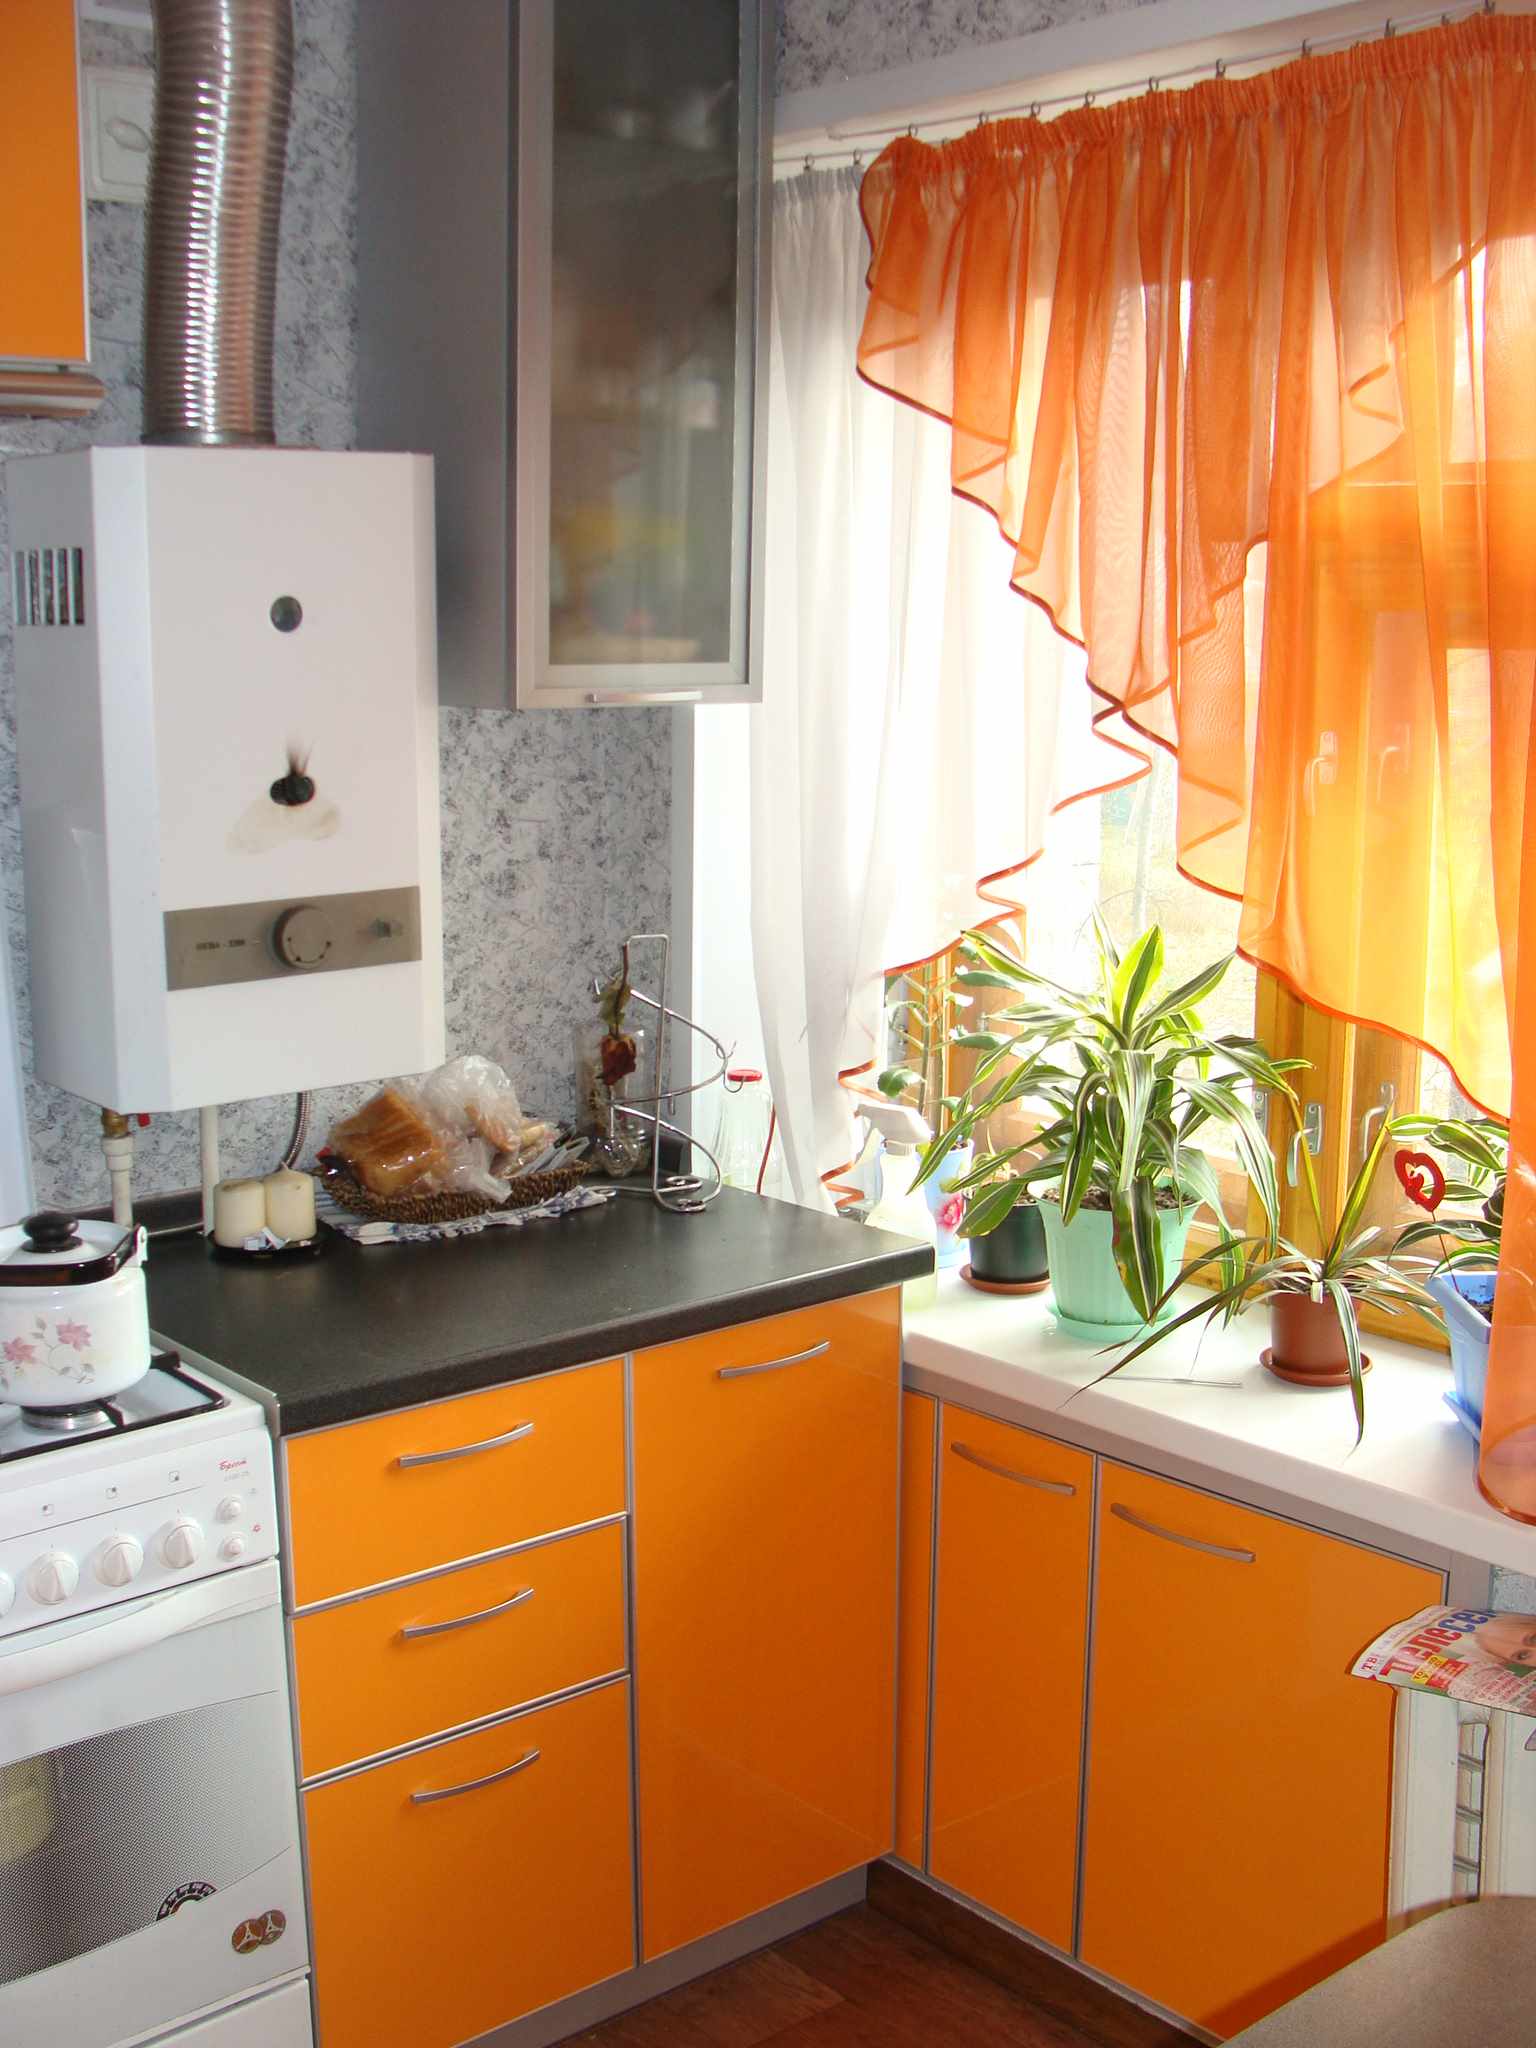 Et eksempel på et vakkert kjøkkeninnredning med en gasskjele